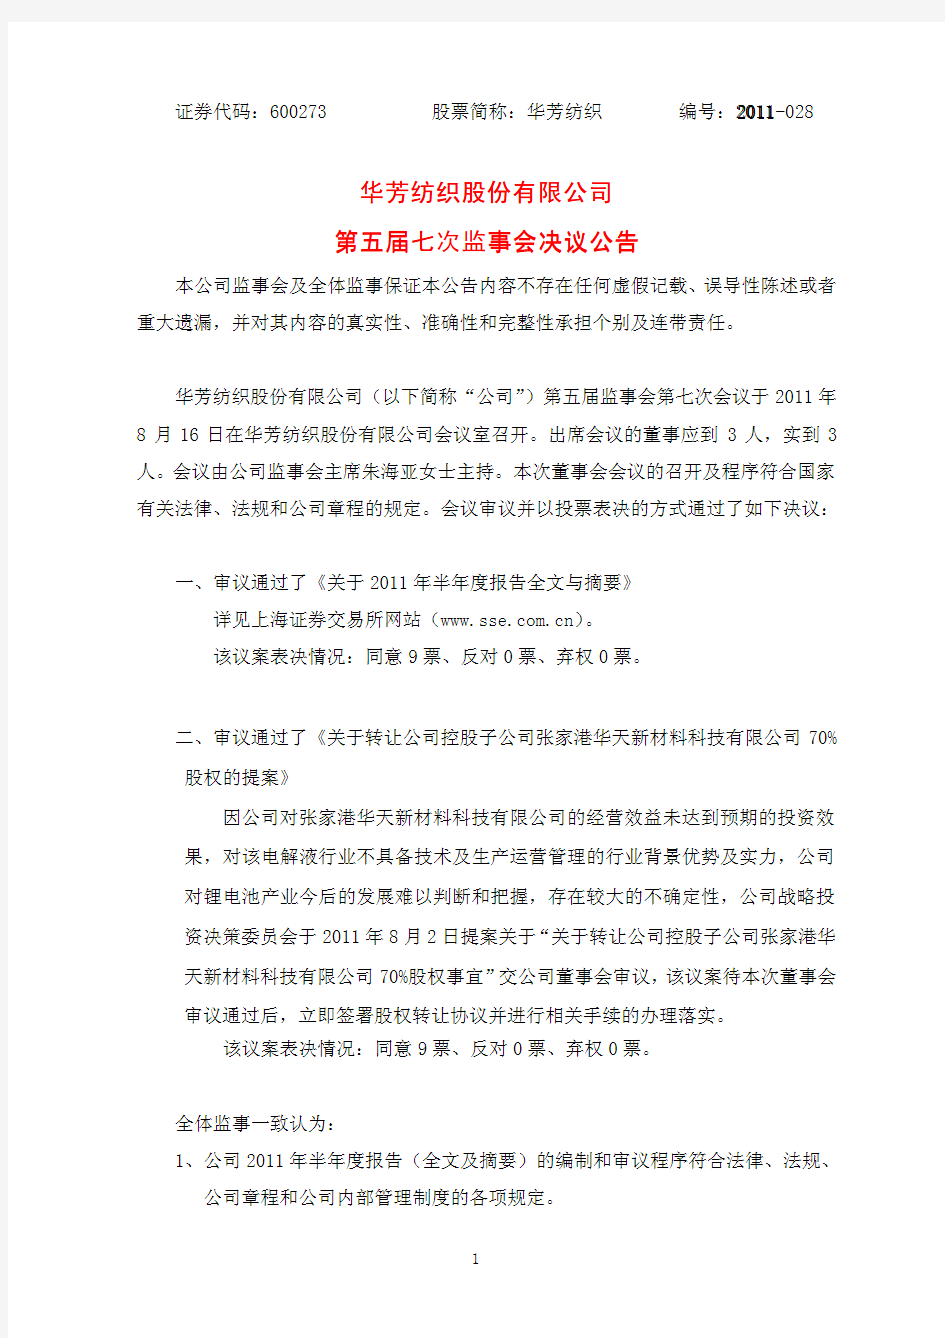 8月16日在华芳纺织股份有限公司会议室召开出席会议的董事应到3